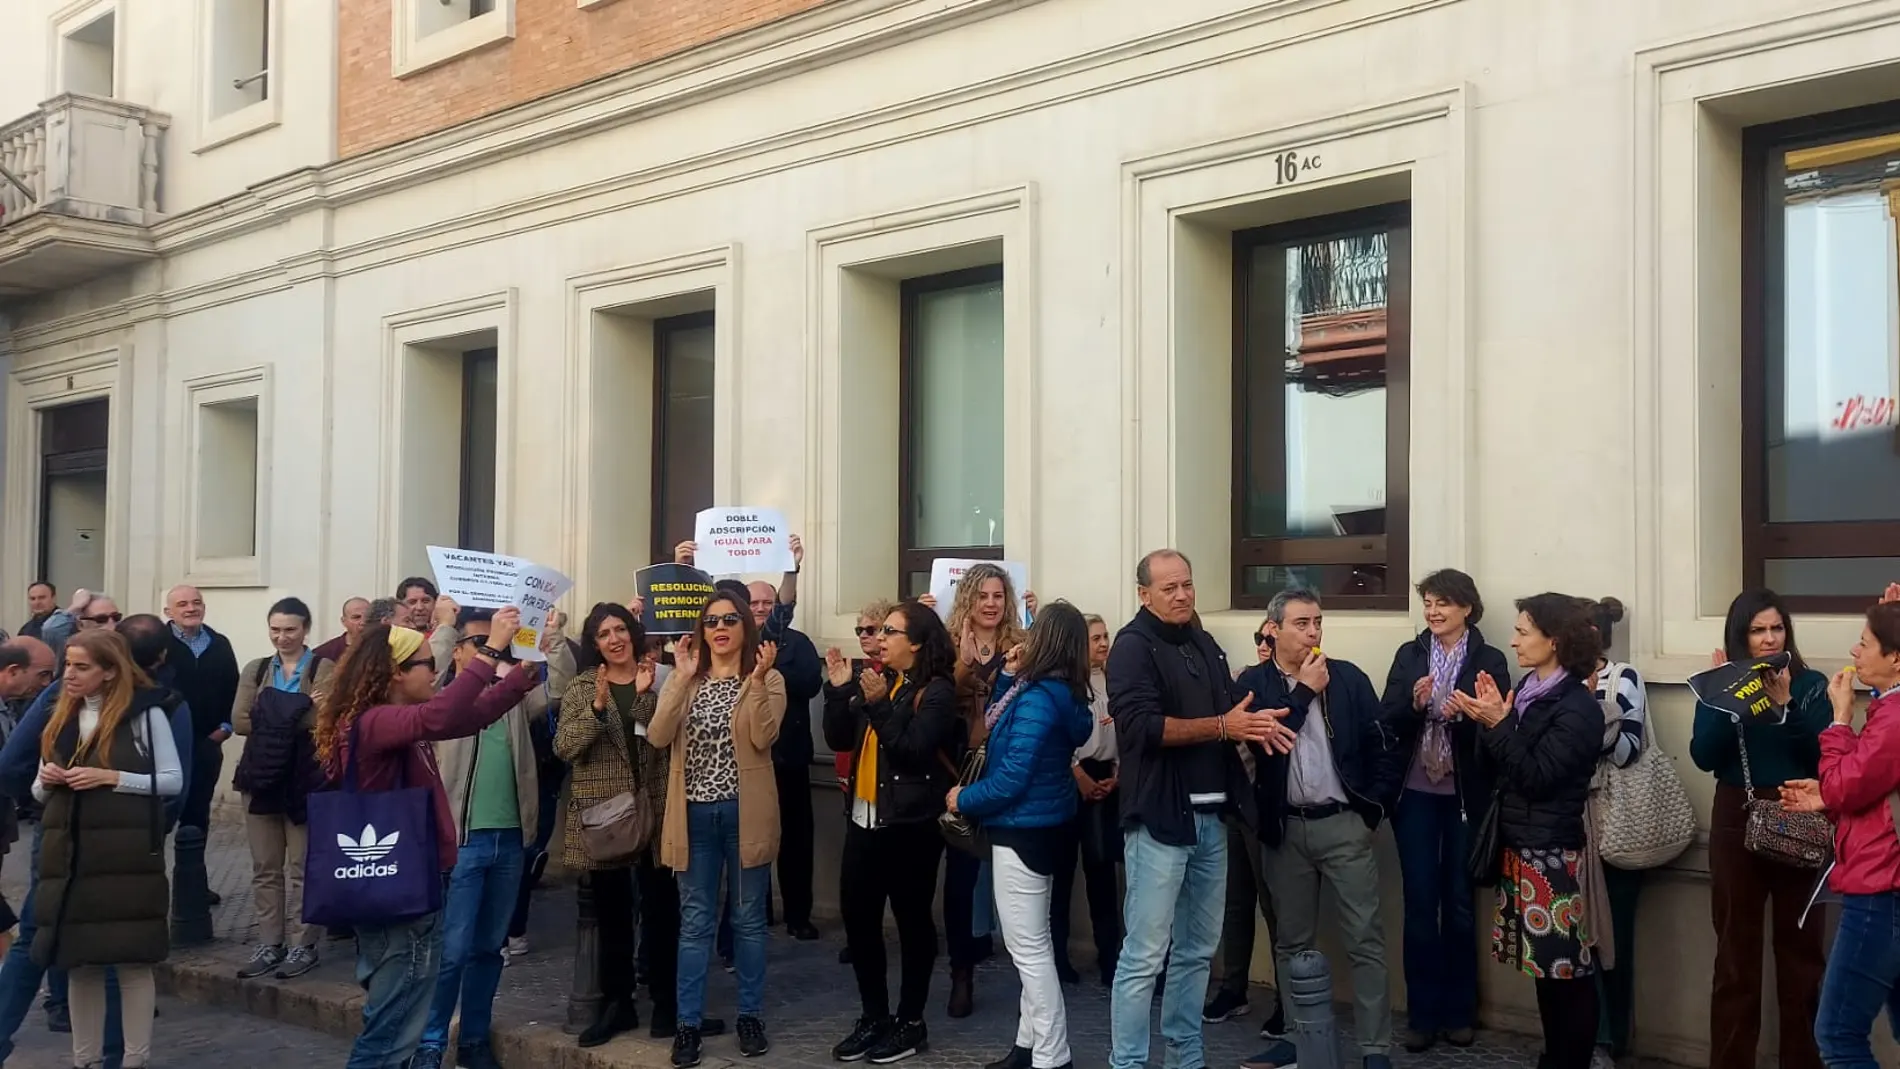 Los funcionarios se manifiestan ante la sede de la Dirección General de Recursos Humanos de la Junta de Andalucía